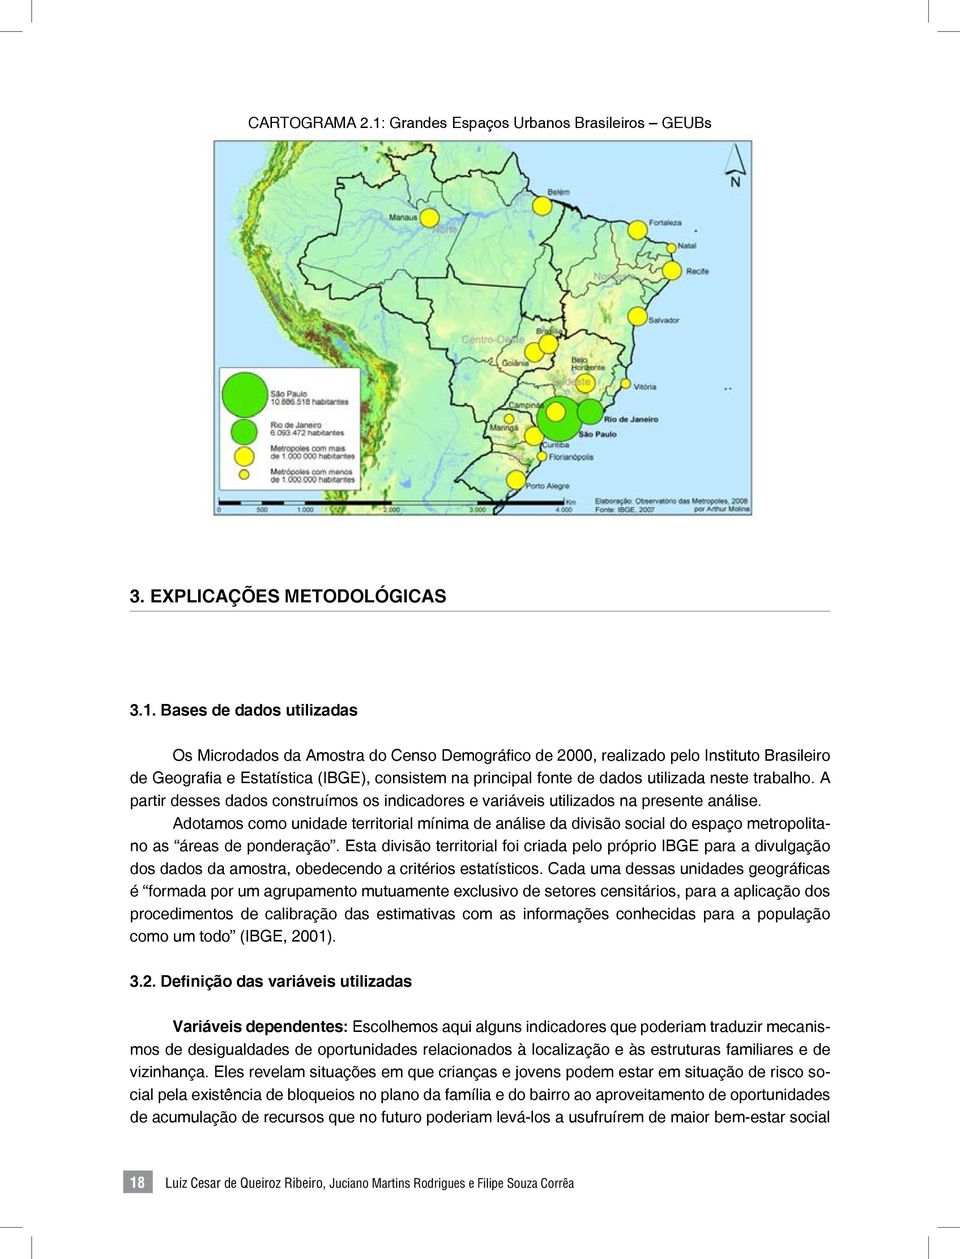 Bases de dados utilizadas Os Microdados da Amostra do Censo Demográfico de 2000, realizado pelo Instituto Brasileiro de Geografia e Estatística (IBGE), consistem na principal fonte de dados utilizada